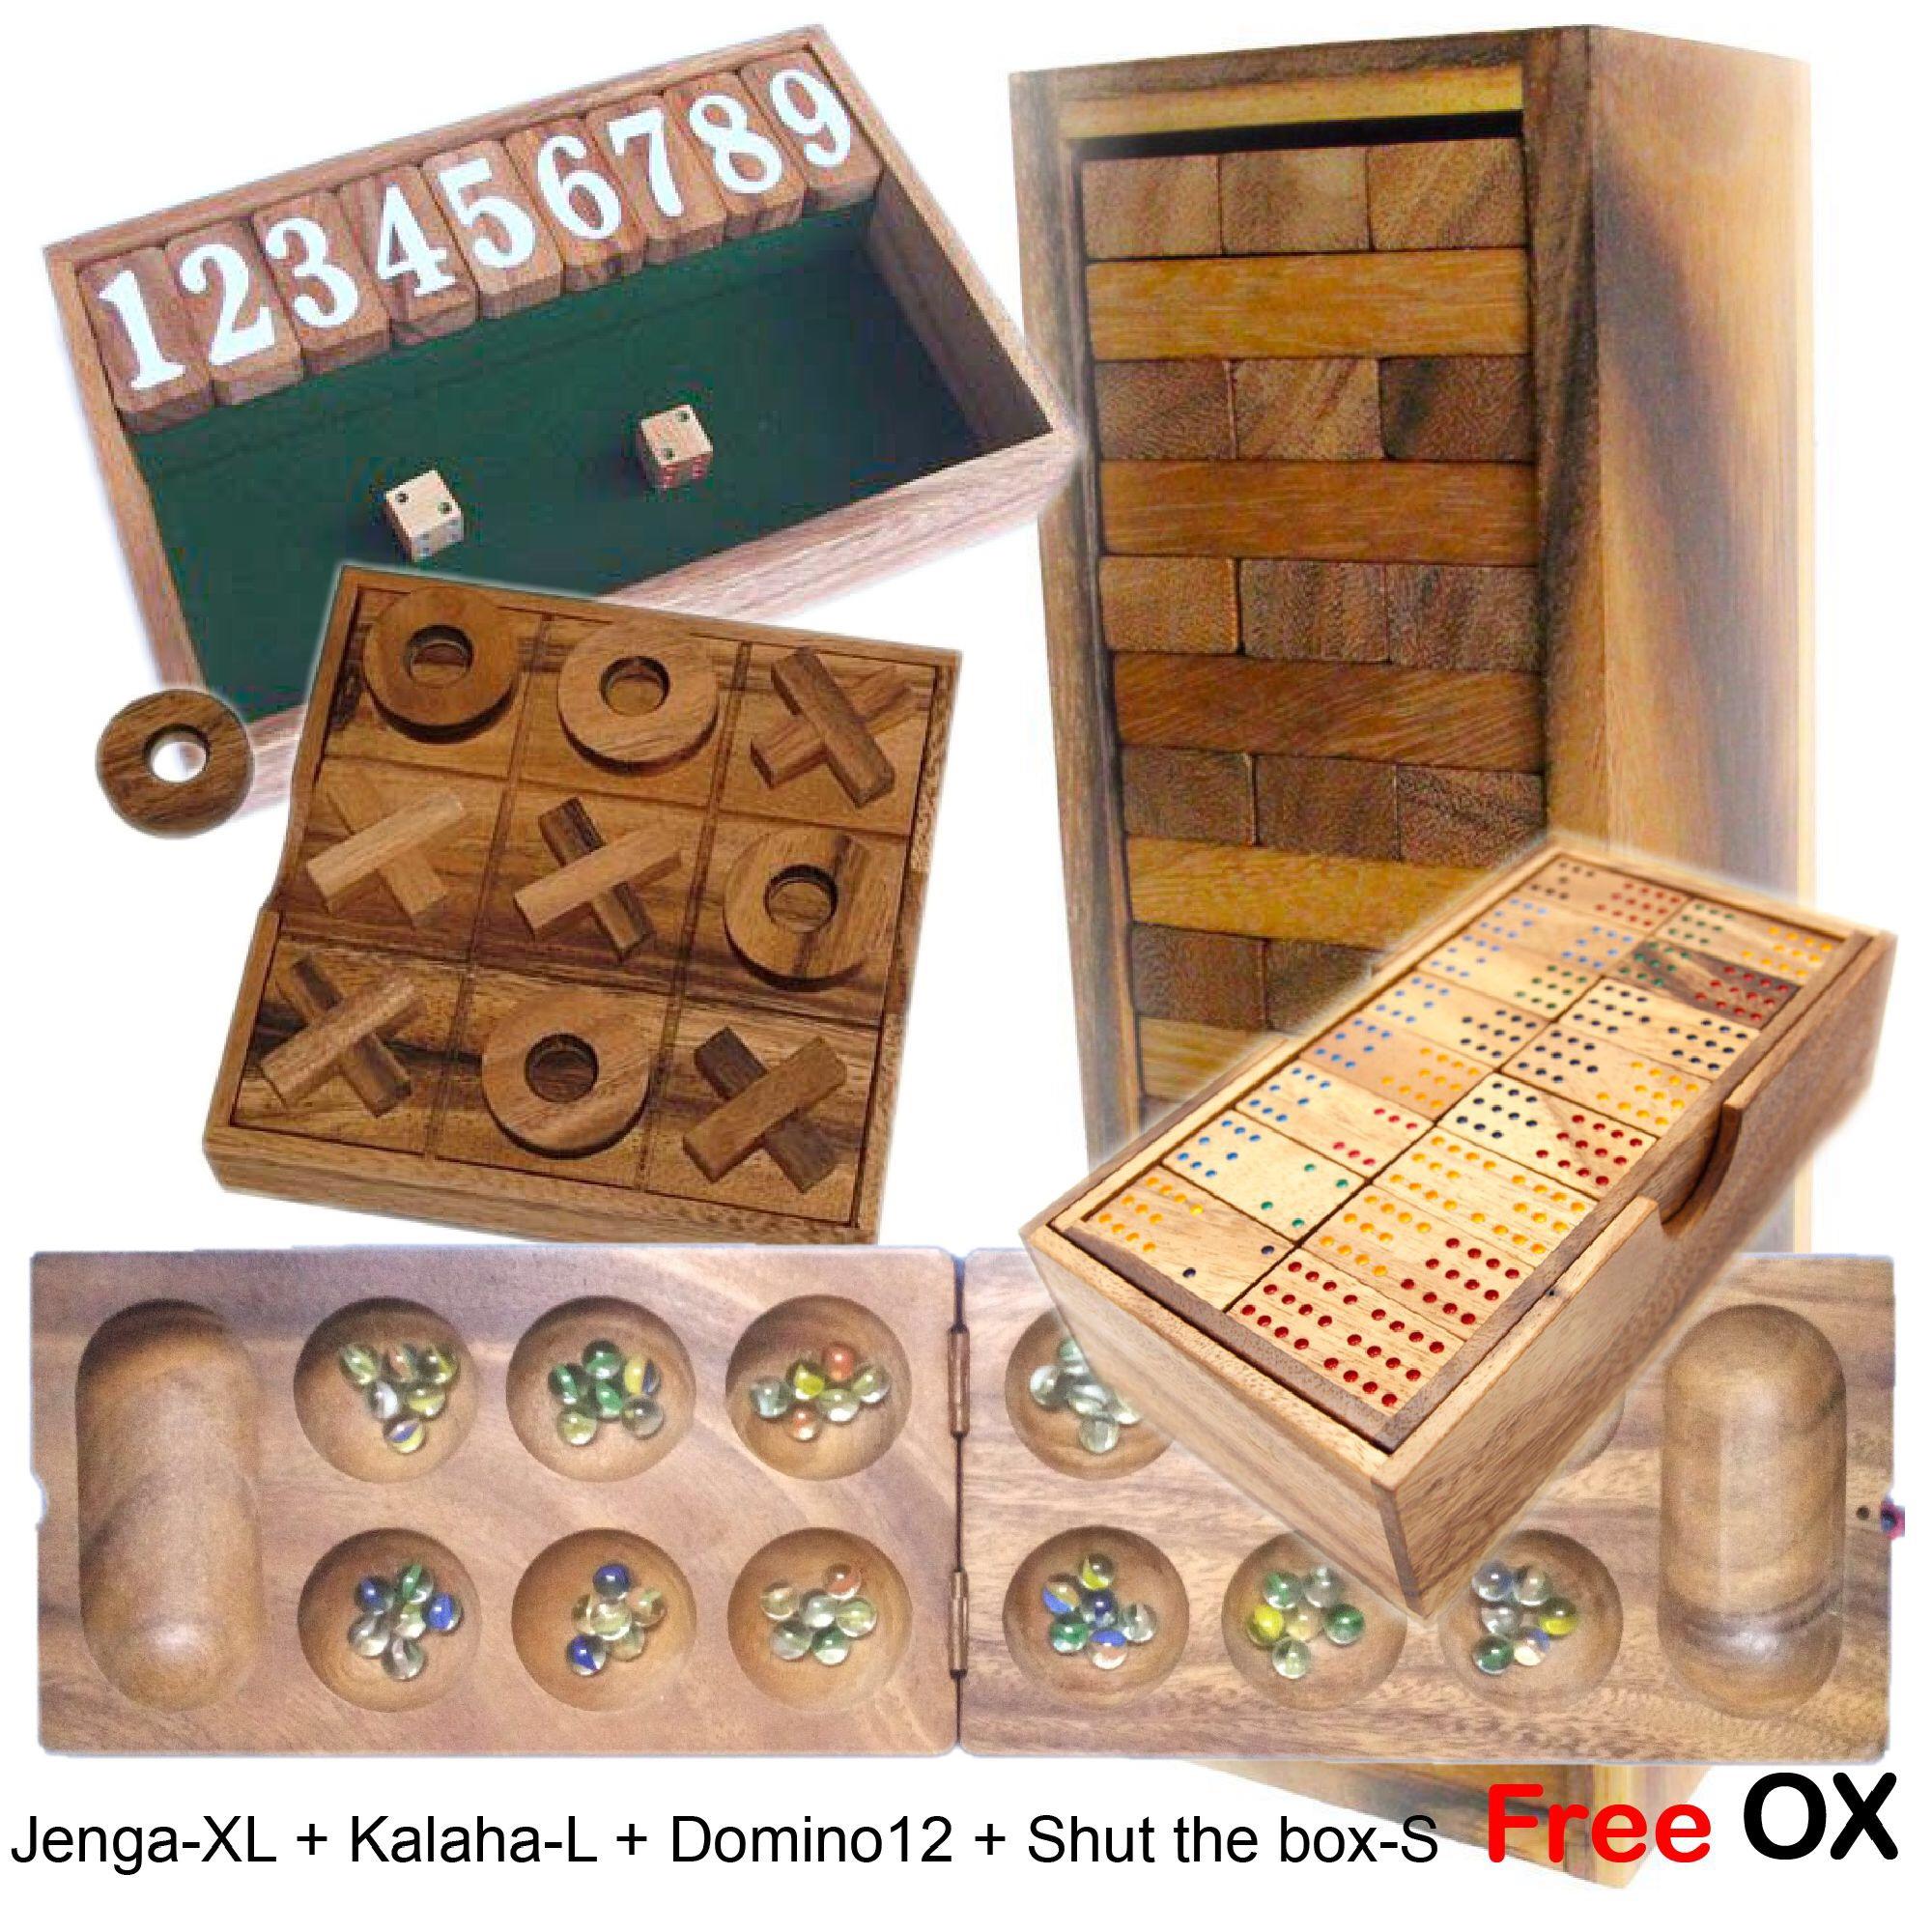 Best-07 เกมส์ตึกถล่ม-จัมโบ้+หมากหลุม-ใหญ่+โดมิโน่12จุด+ปิดกล่อง-เล็ก ฟรี OX (Jenga-XL+Kalaha-L+Domino12+Shut the box-S)